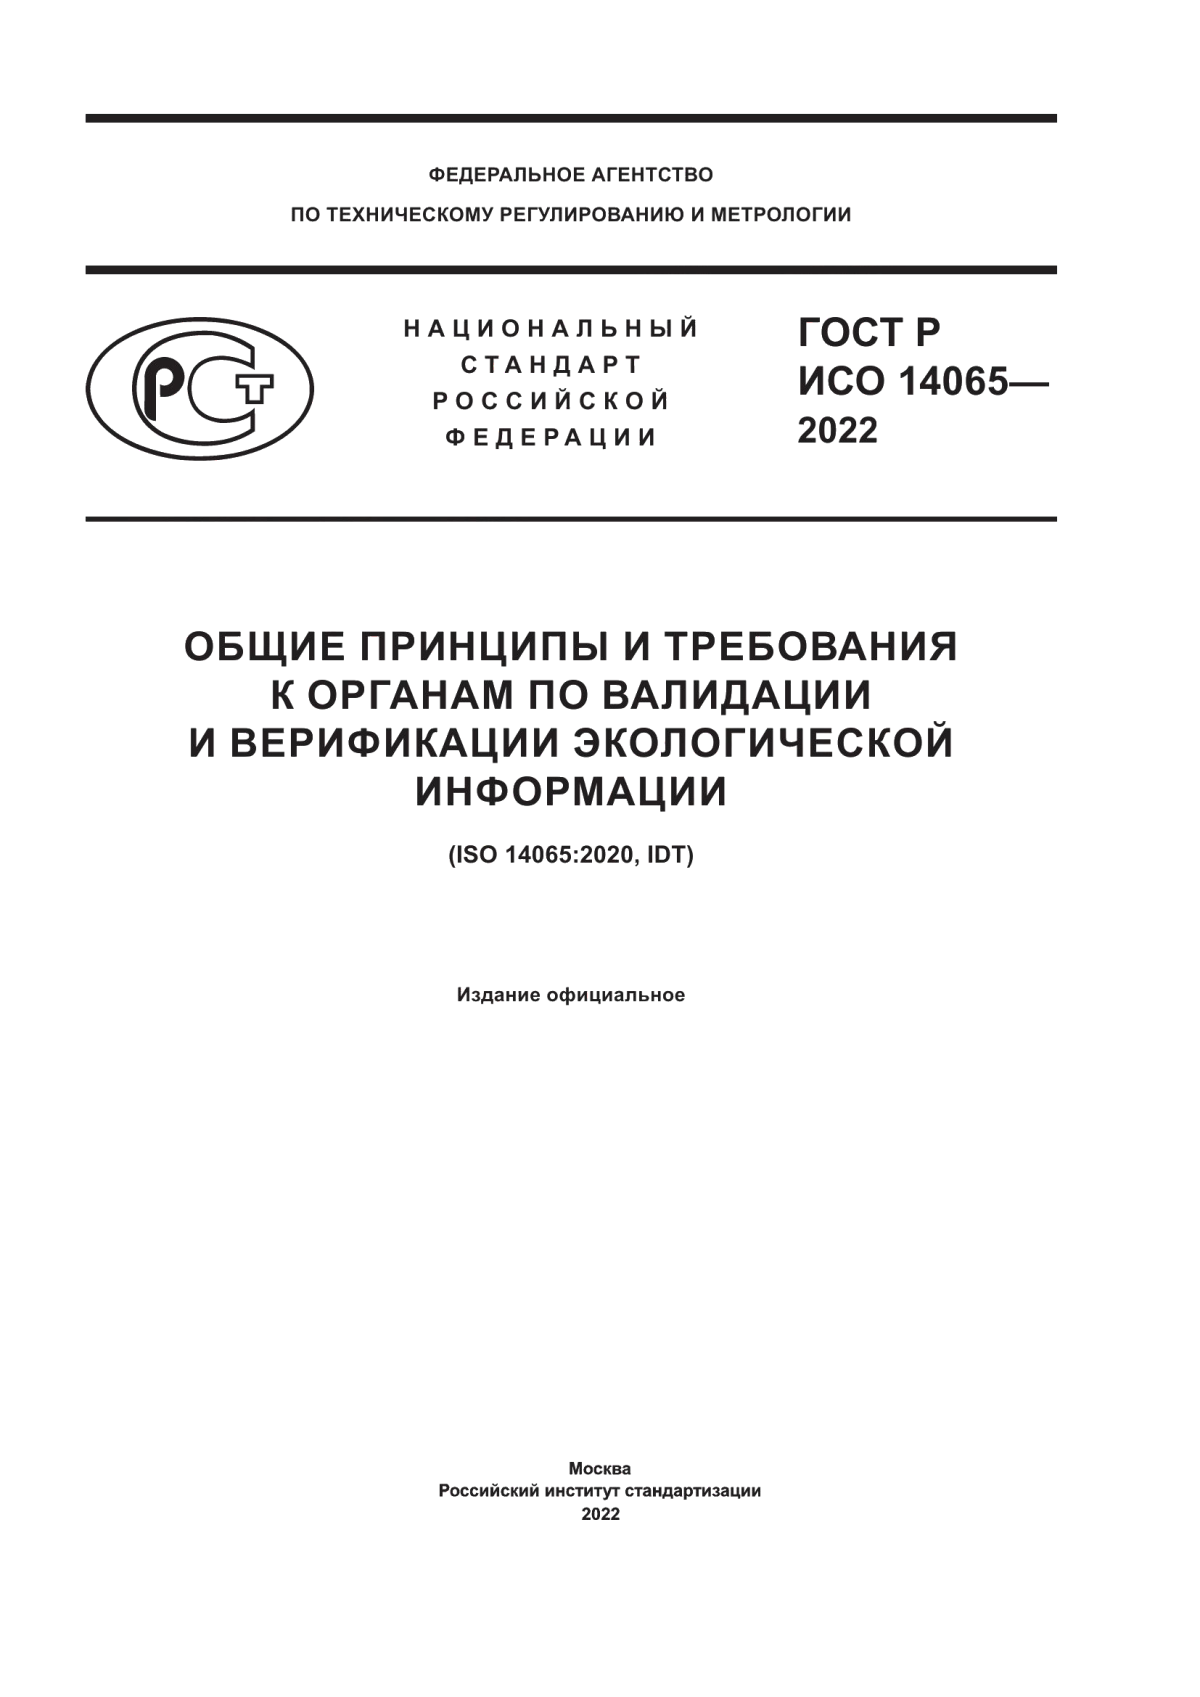 ГОСТ Р ИСО 14065-2022 Общие принципы и требования к органам по валидации и верификации экологической информации